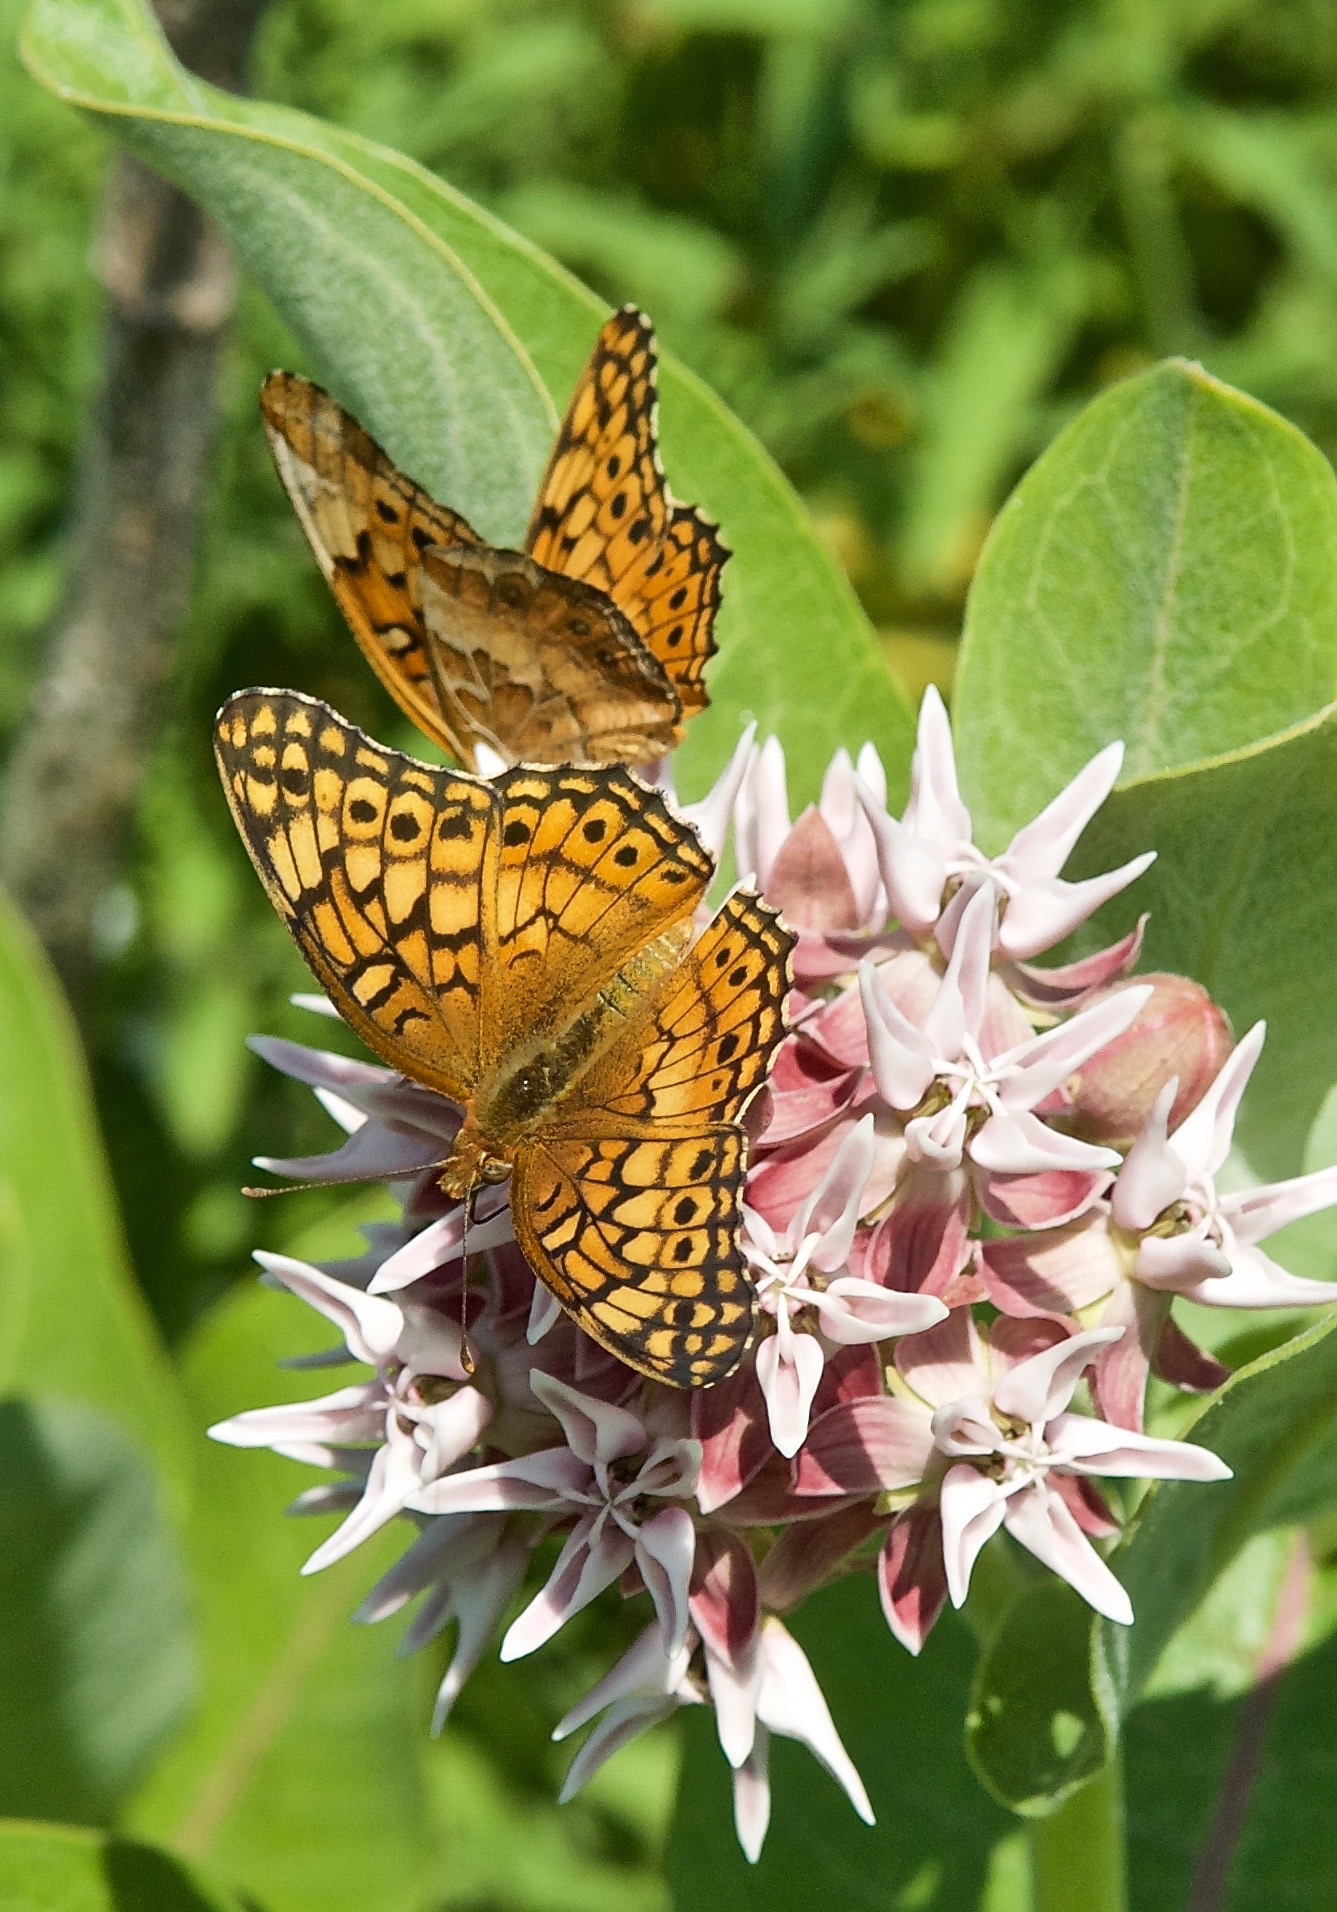 Euptoieta claudia (Butterfly)Variegated Fritillary on Showy Milkweed